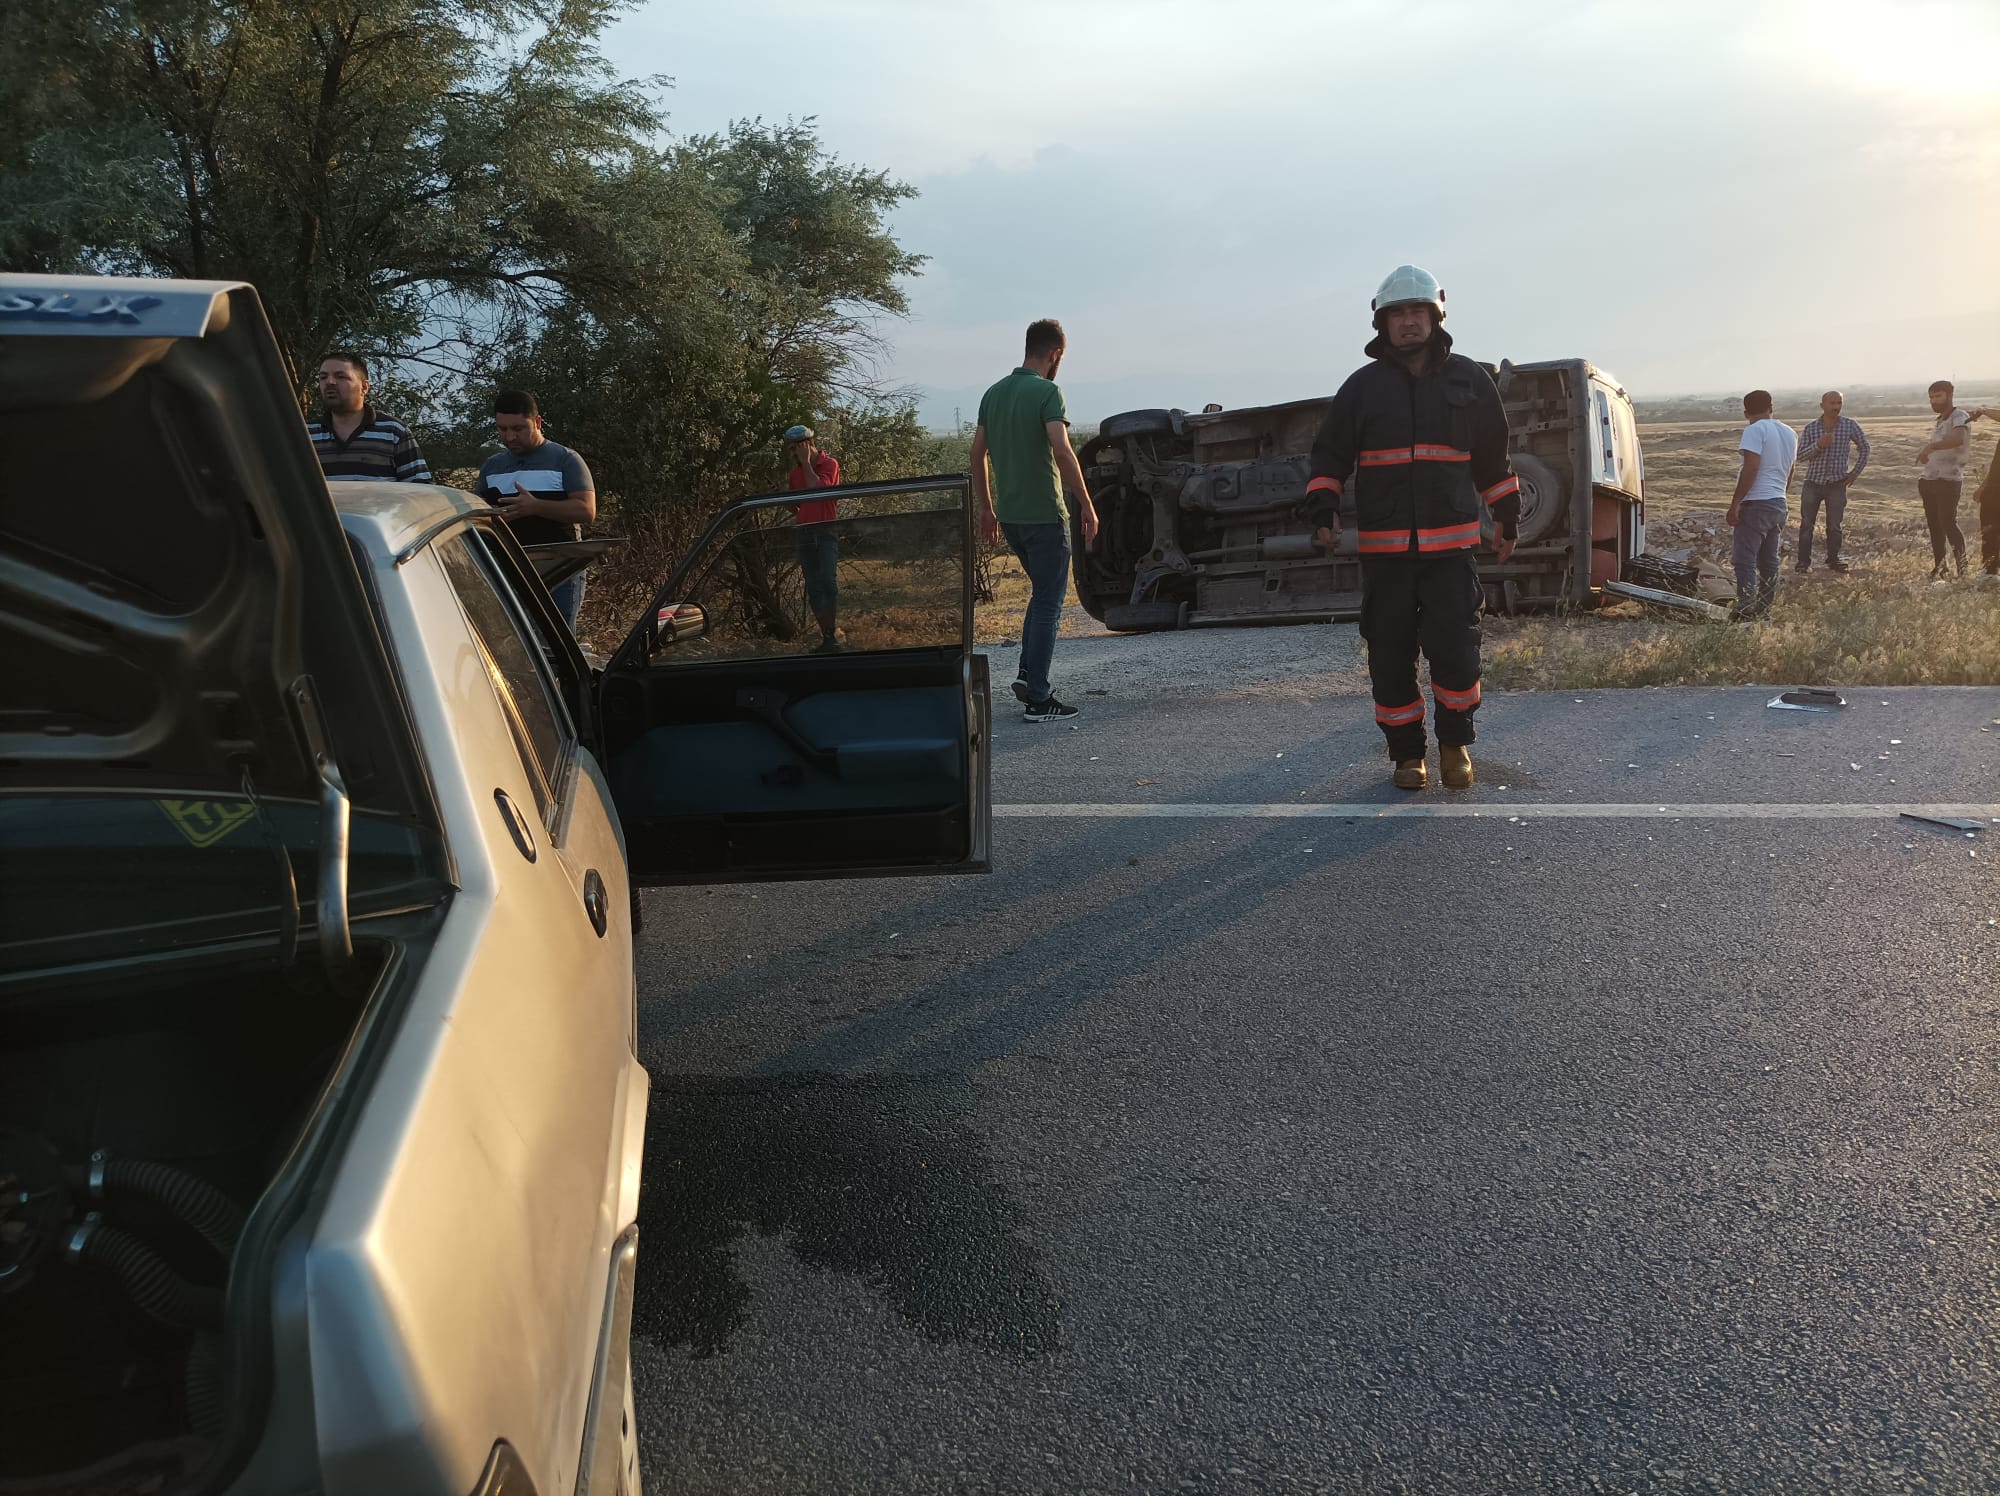 Malatya Şehir Mezarlığı yakınında otomobille minibüs çarpıştı. Minibüsün devrildiği kazada 5 kişi yaralandı.